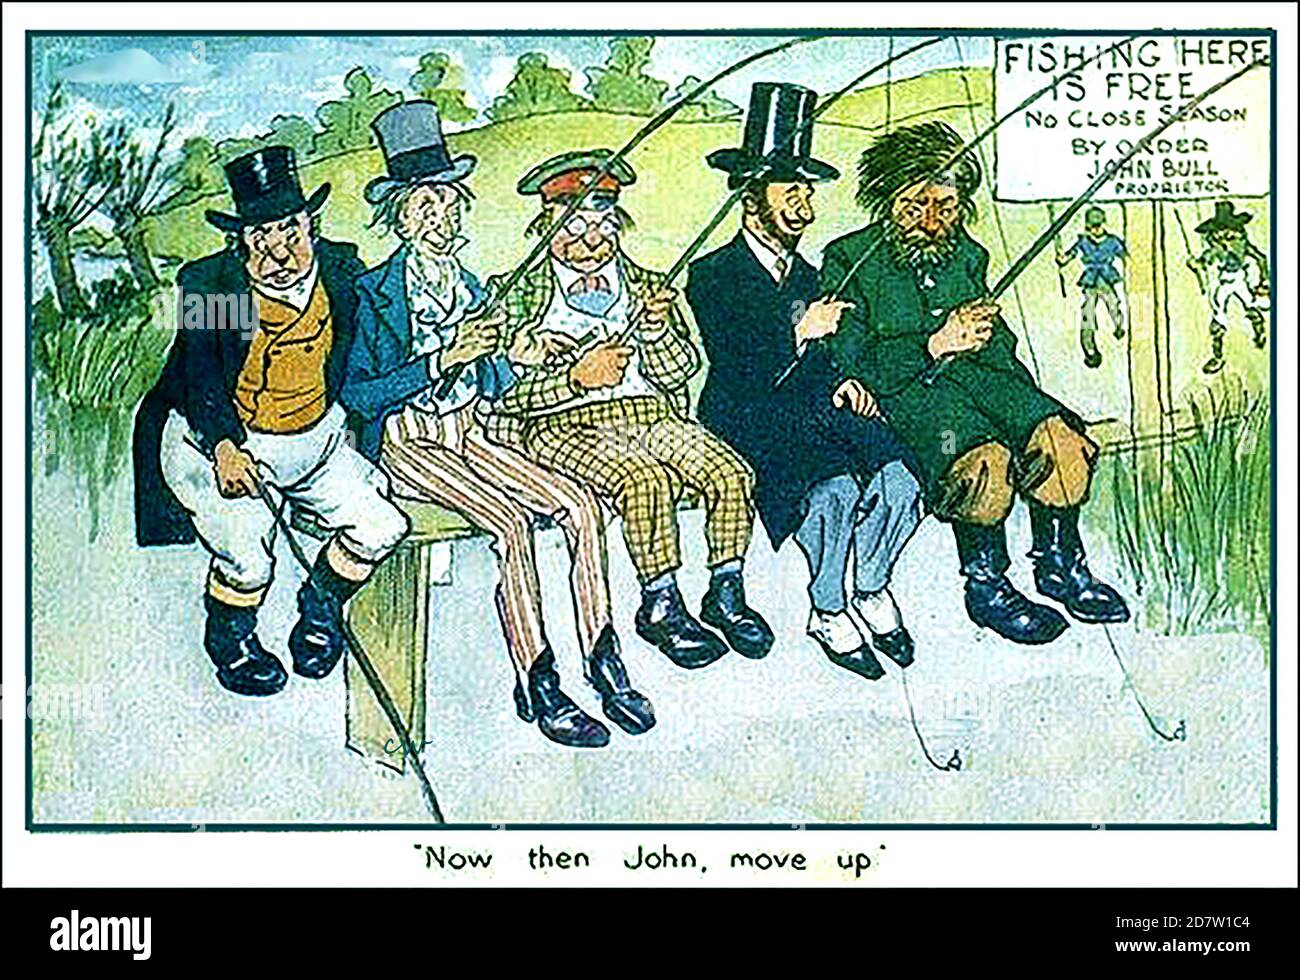 Eine englische politische Comic-Postkarte aus dem Jahr 1913, die zunächst das FREIHANDELSABKOMMEN kommentiert, aber realitätsgewahrt für die heutigen Brexit-Handelsverhandlungen und Fischereirechte ist. Abgebildet sind von links nach rechts John Bull (Großbritannien) Amerika, Deutschland, Frankreich und Russland. Andere Länder sind im Hintergrund zu sehen, die in Richtung des Fischereigrunds gehen. Stockfoto